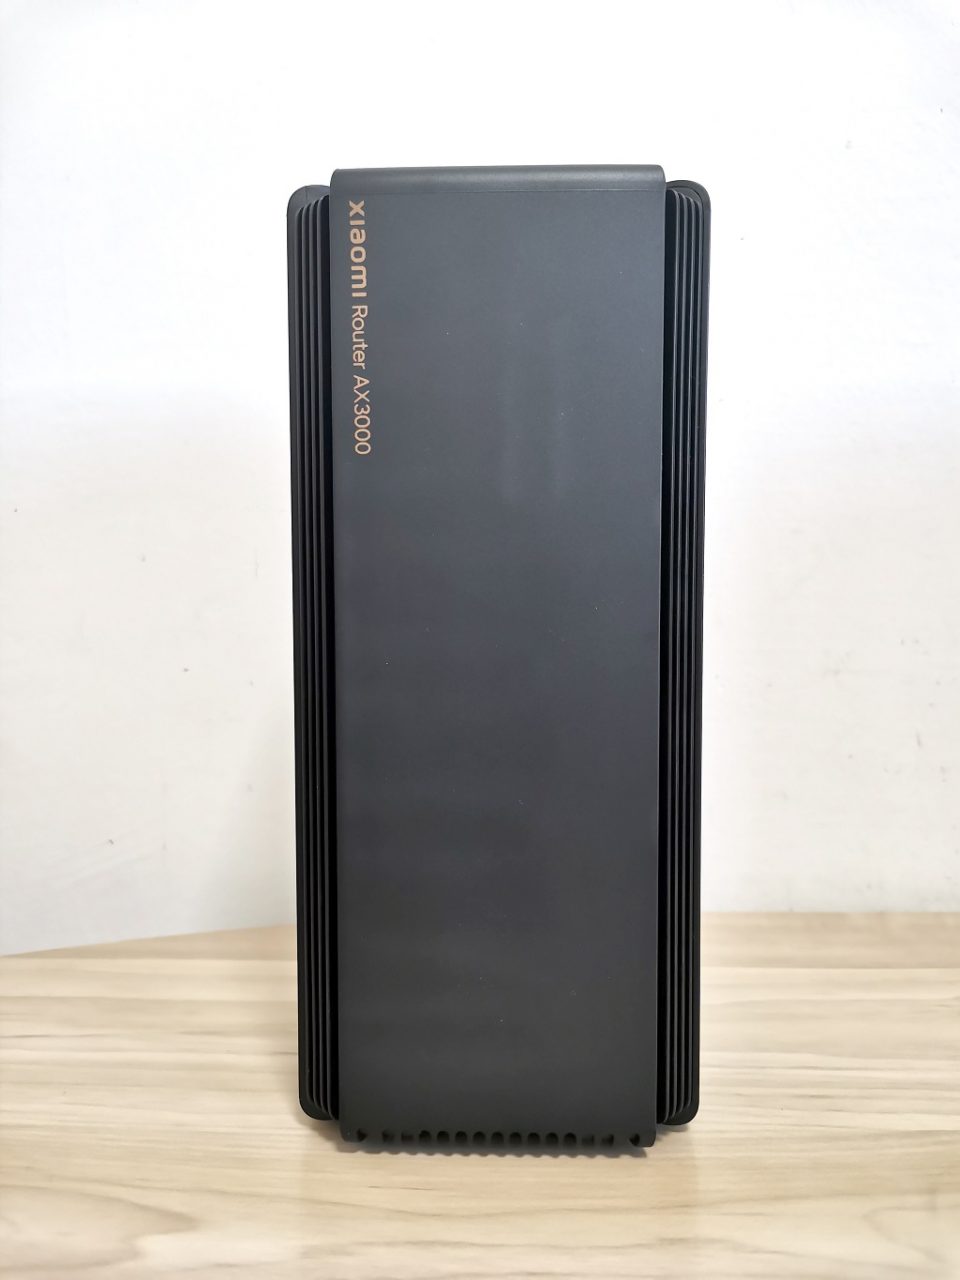 Xiaomi Ax3000 Router 2